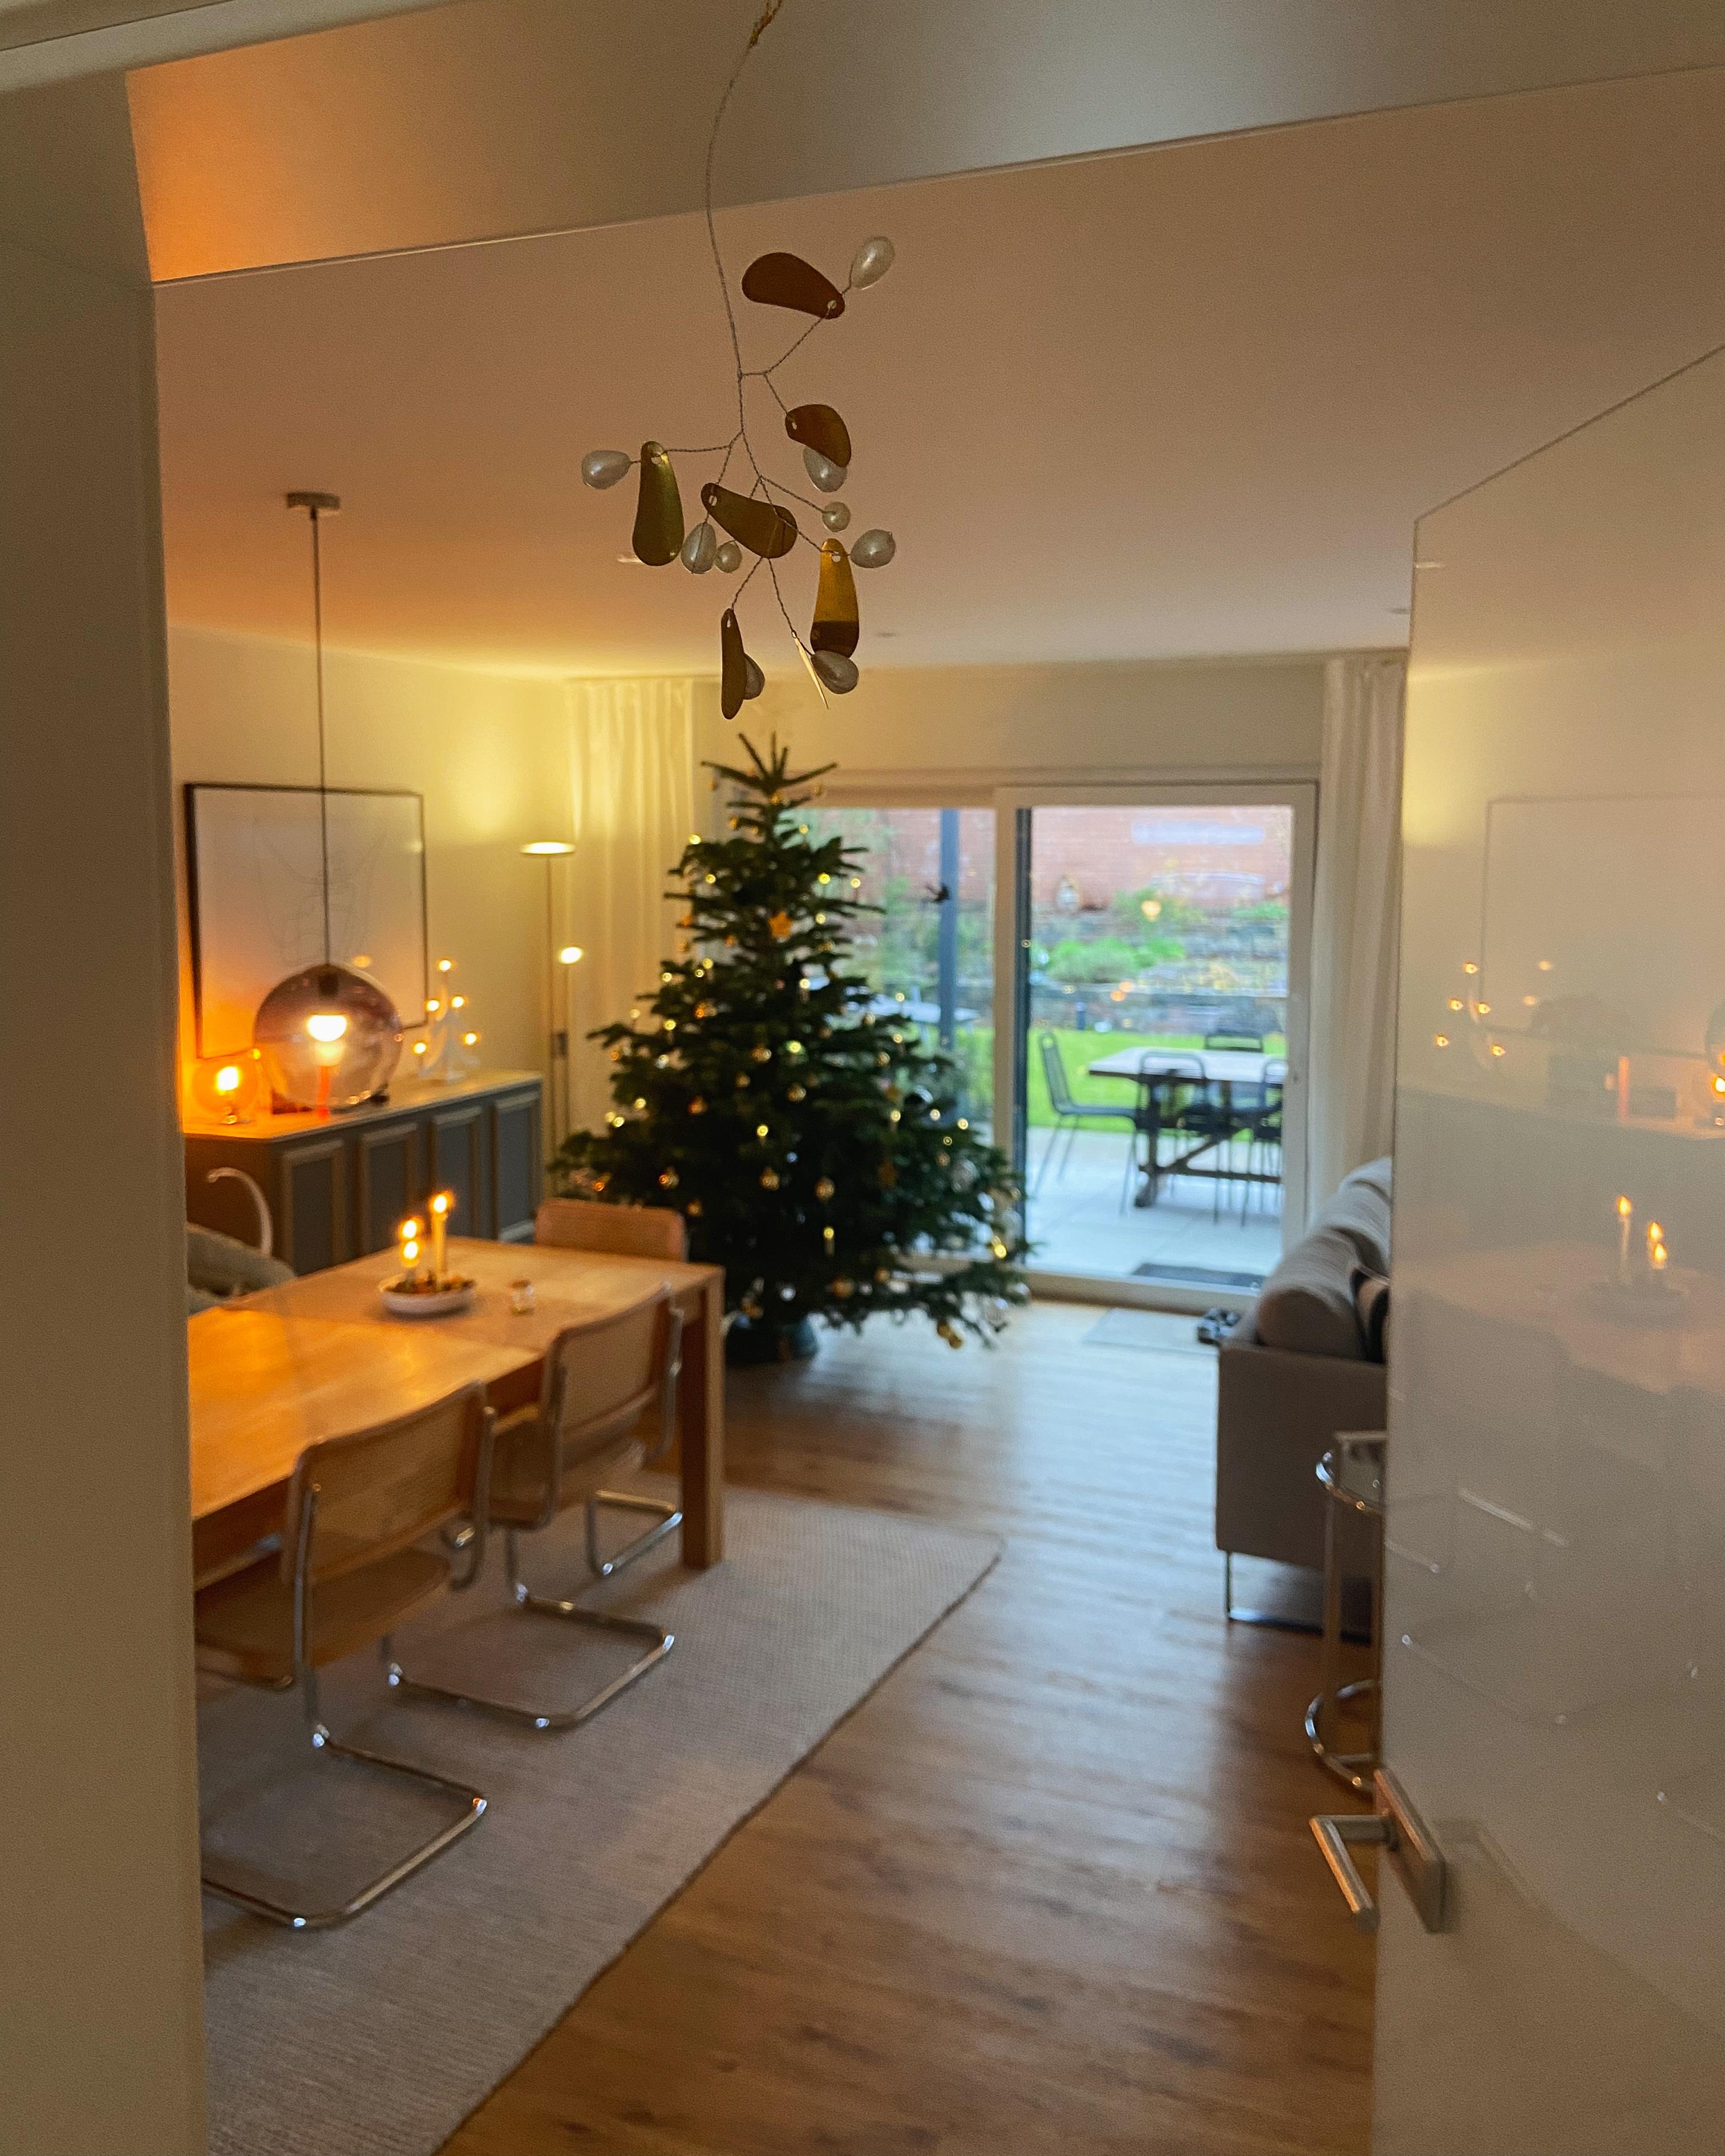 #weihnachtsbaum #mistelzweig #dezember #minimalismus